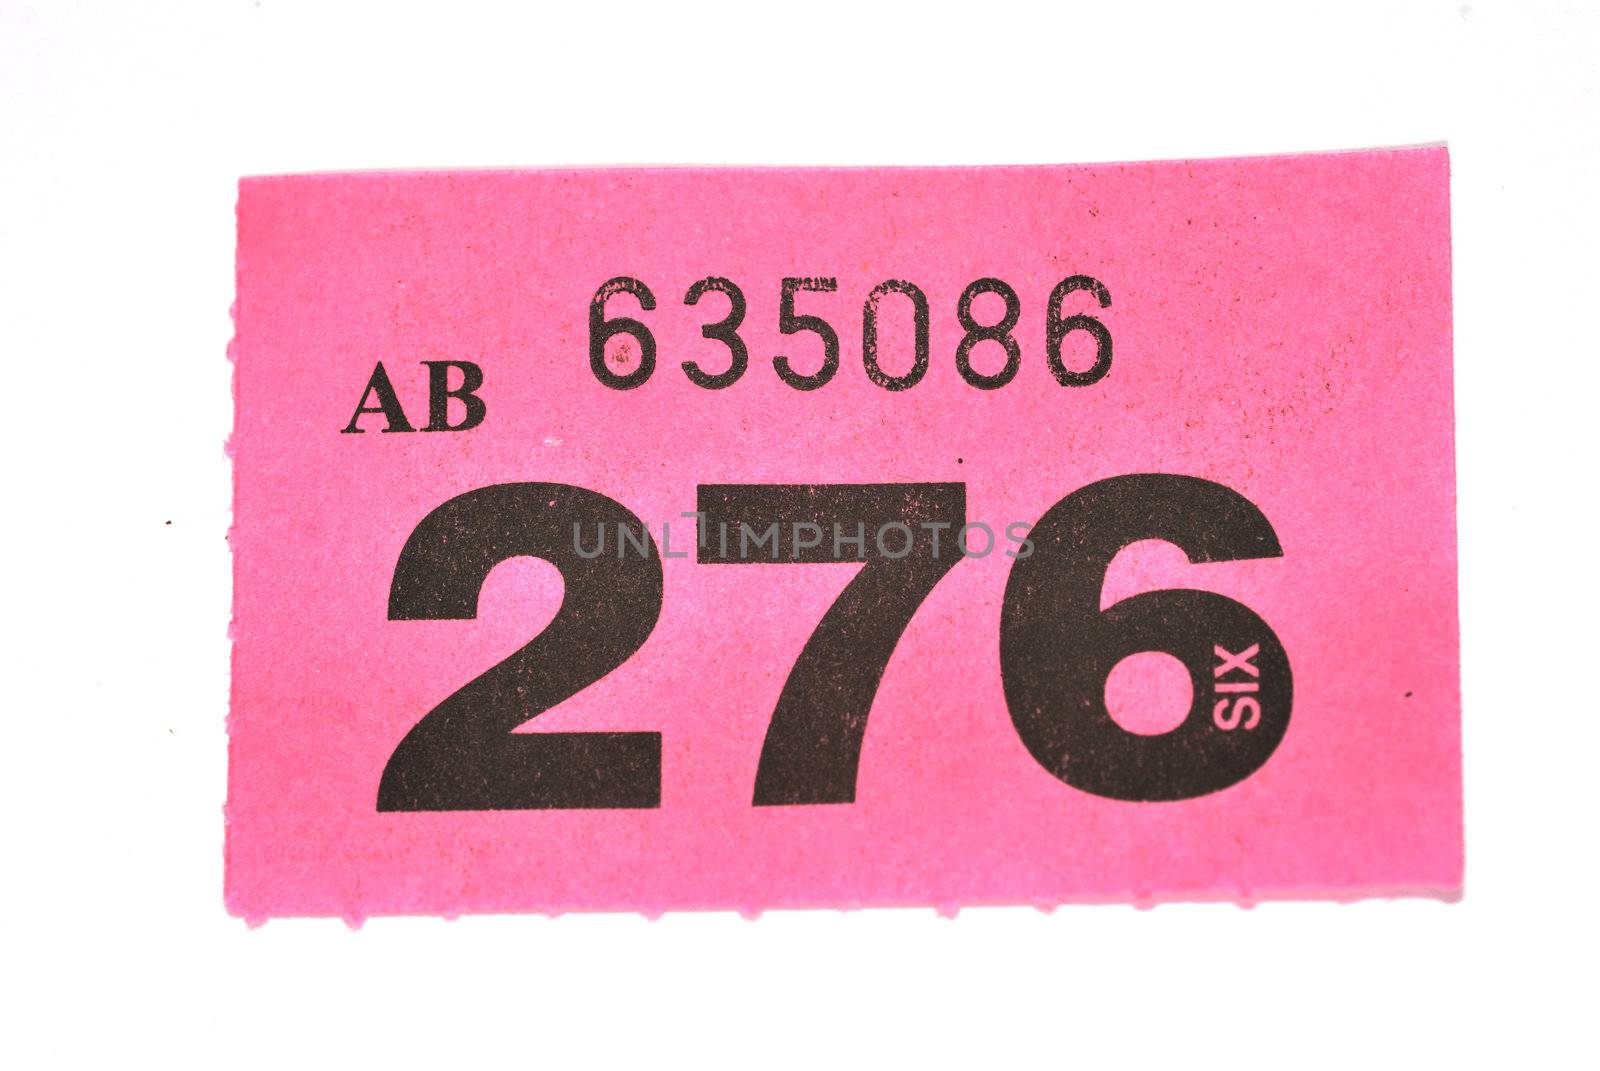 Purple raffle ticket by pauws99